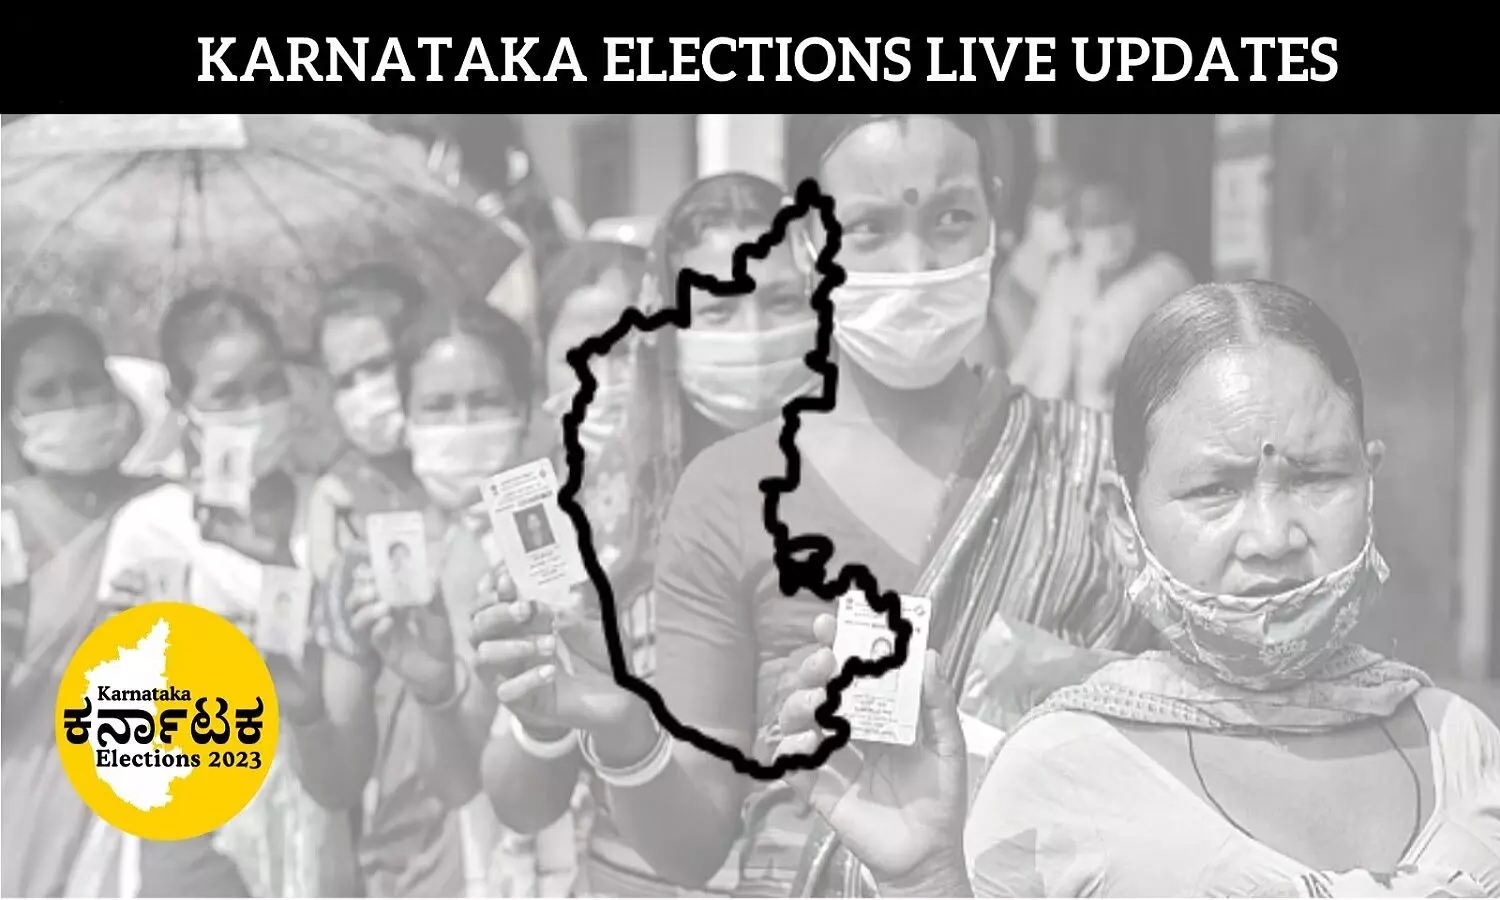 Karnataka Elections Live: कर्नाटक चुनाव लाइव, उपद्रव के बाद शाम 6 बजे मतदान संपन्न